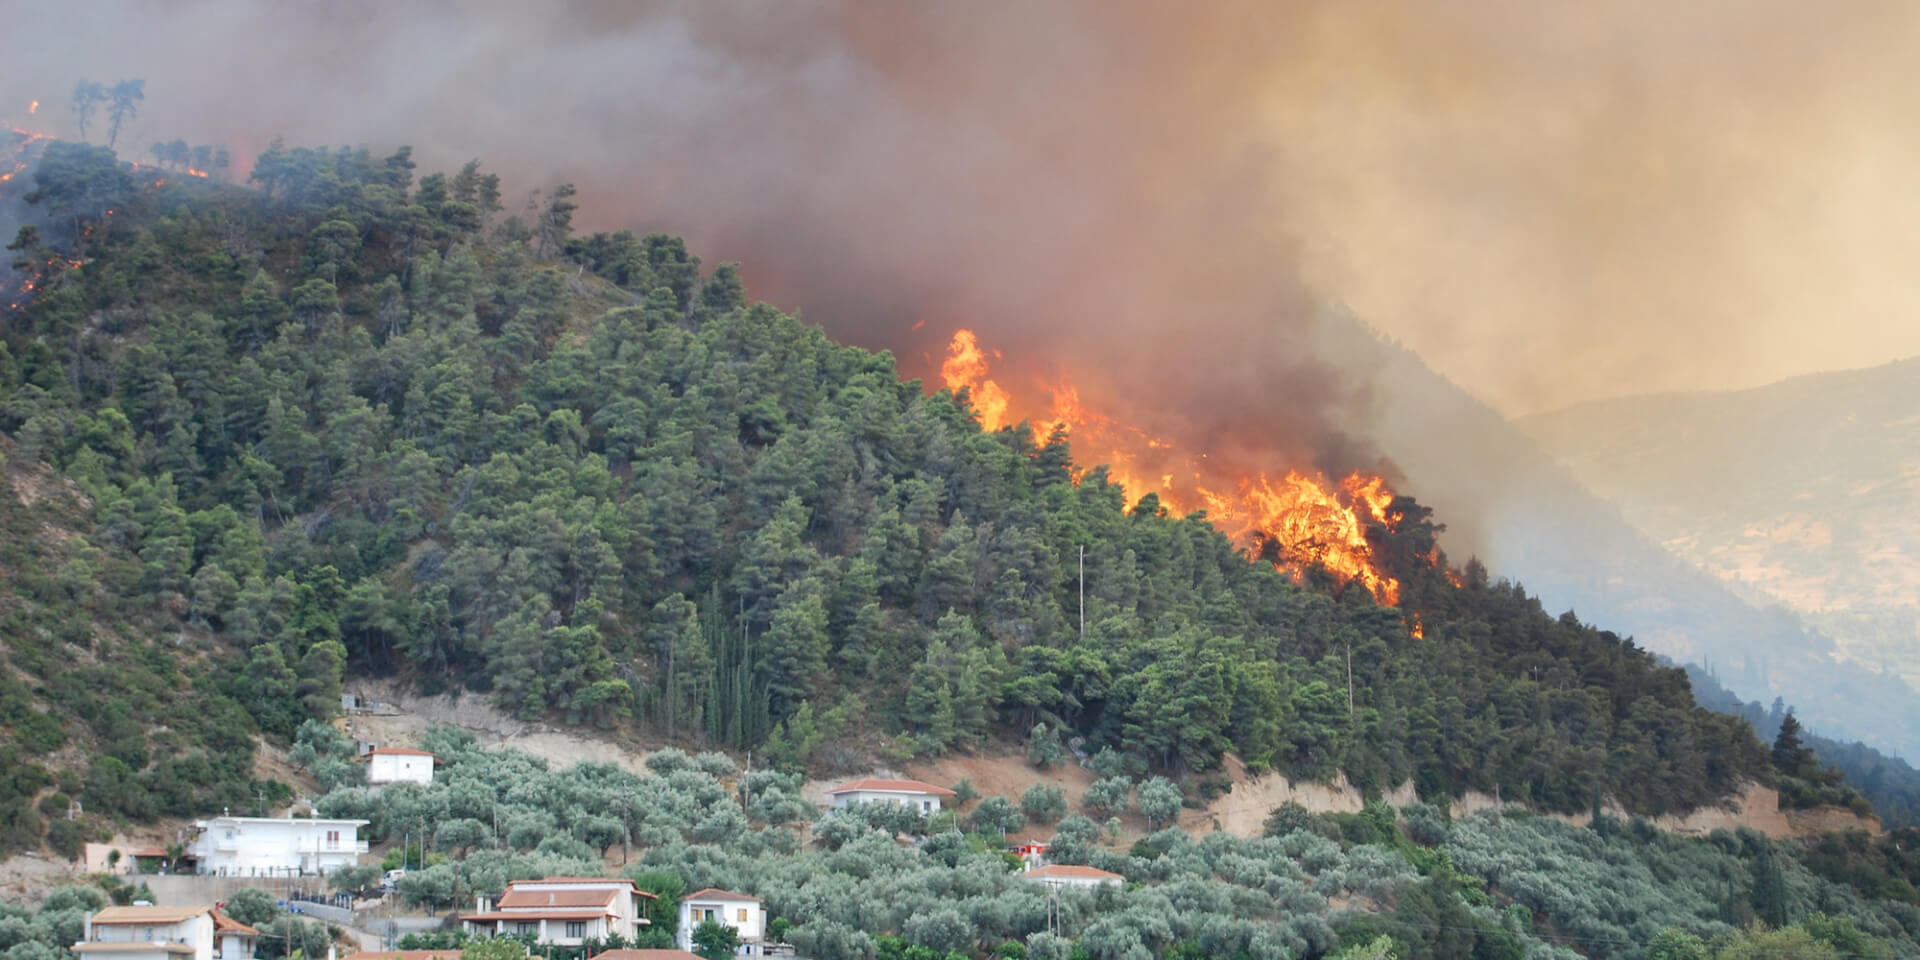 Wildfire Grecia